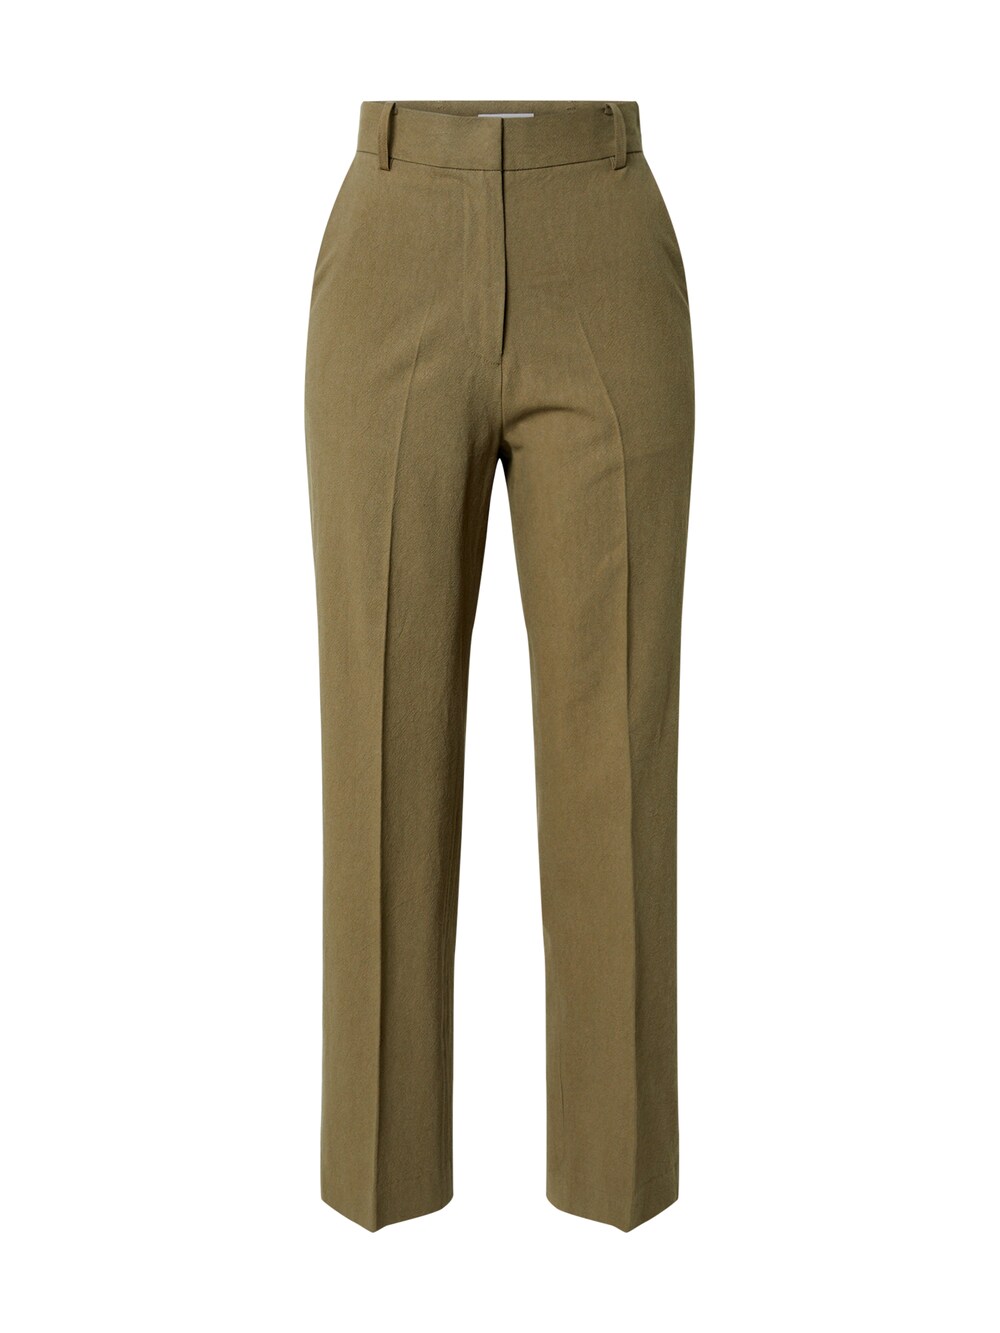 Обычные плиссированные брюки Edited Leona, оливковый обычные плиссированные брюки edited leona оливковый